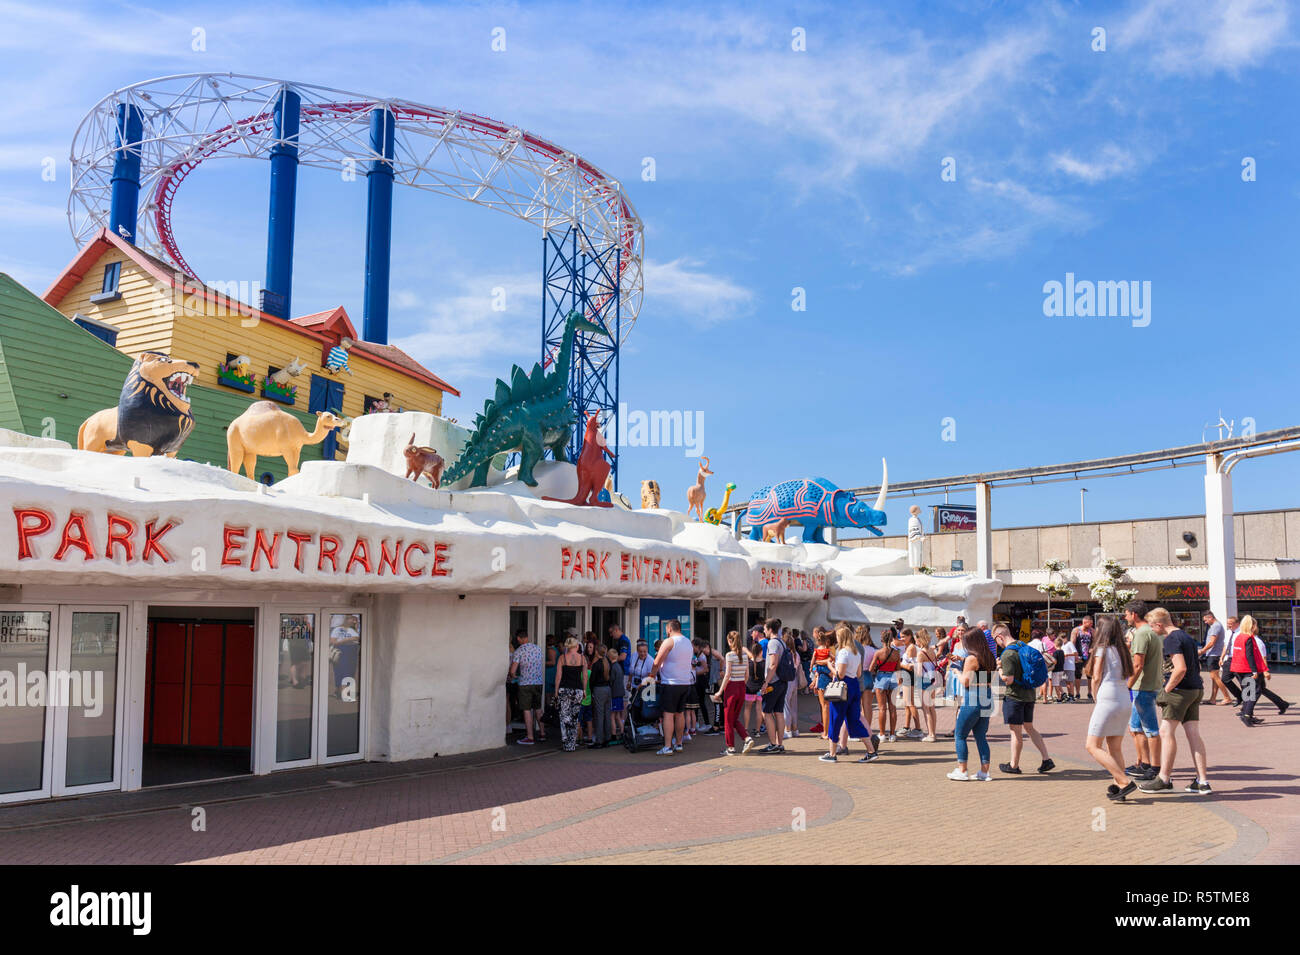 Blackpool Großbritannien viele Leute in der Warteschlange der Blackpool Pleasure Beach Amusement Park Messegelände Blackpool Lancashire England UK GB, nach Europa zu gelangen Stockfoto